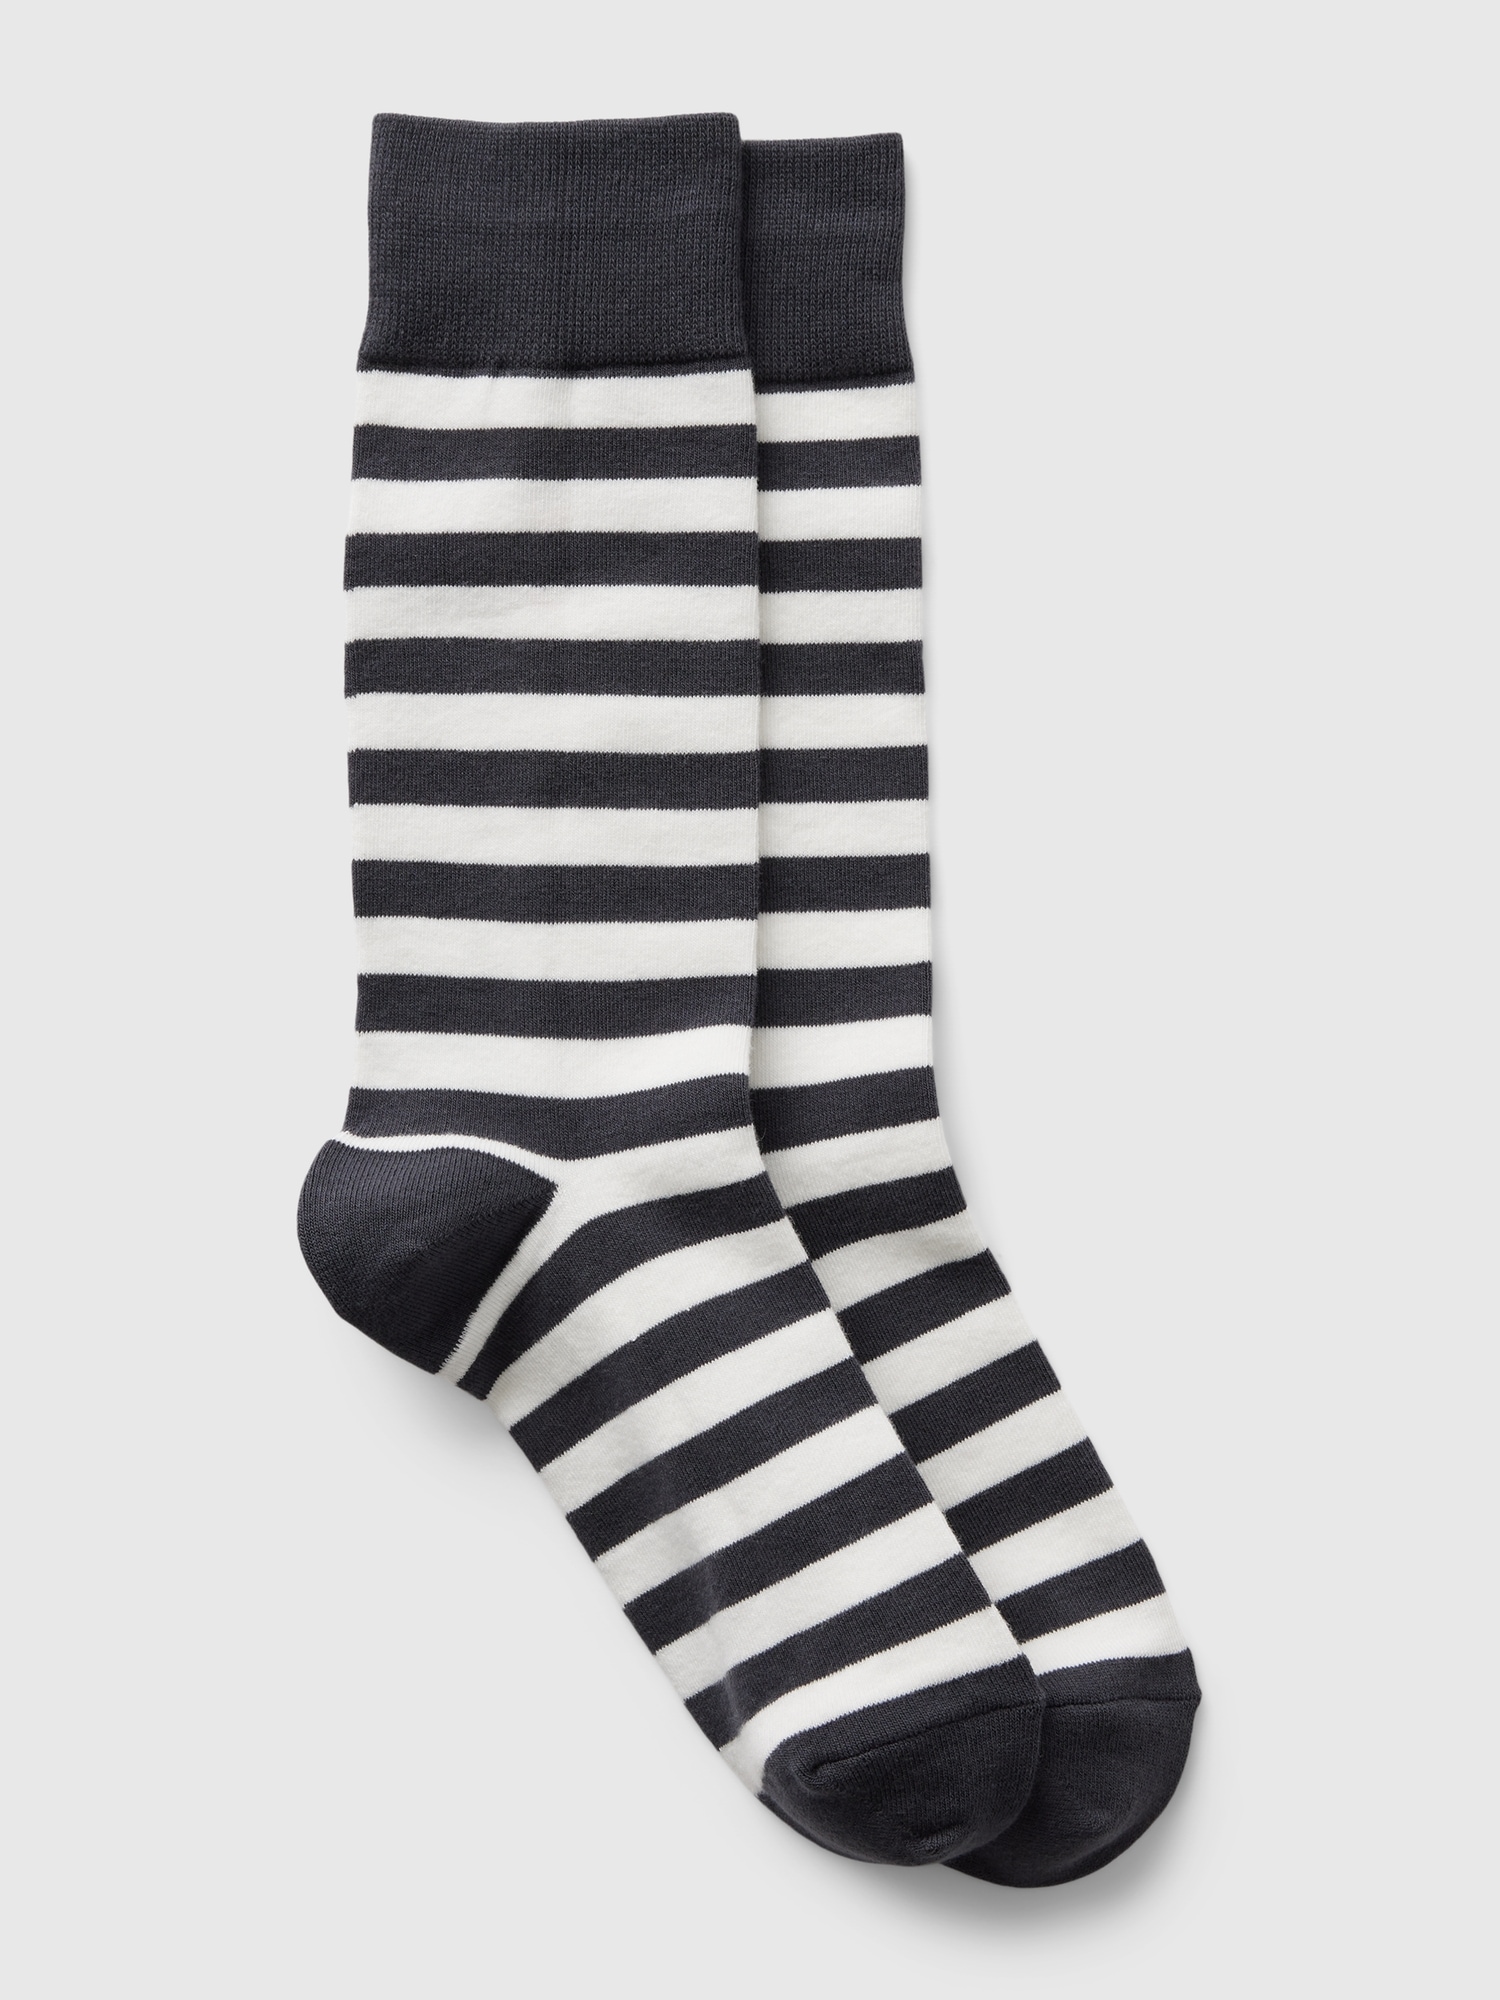 Gap Print Dress Socks In Black Stripe